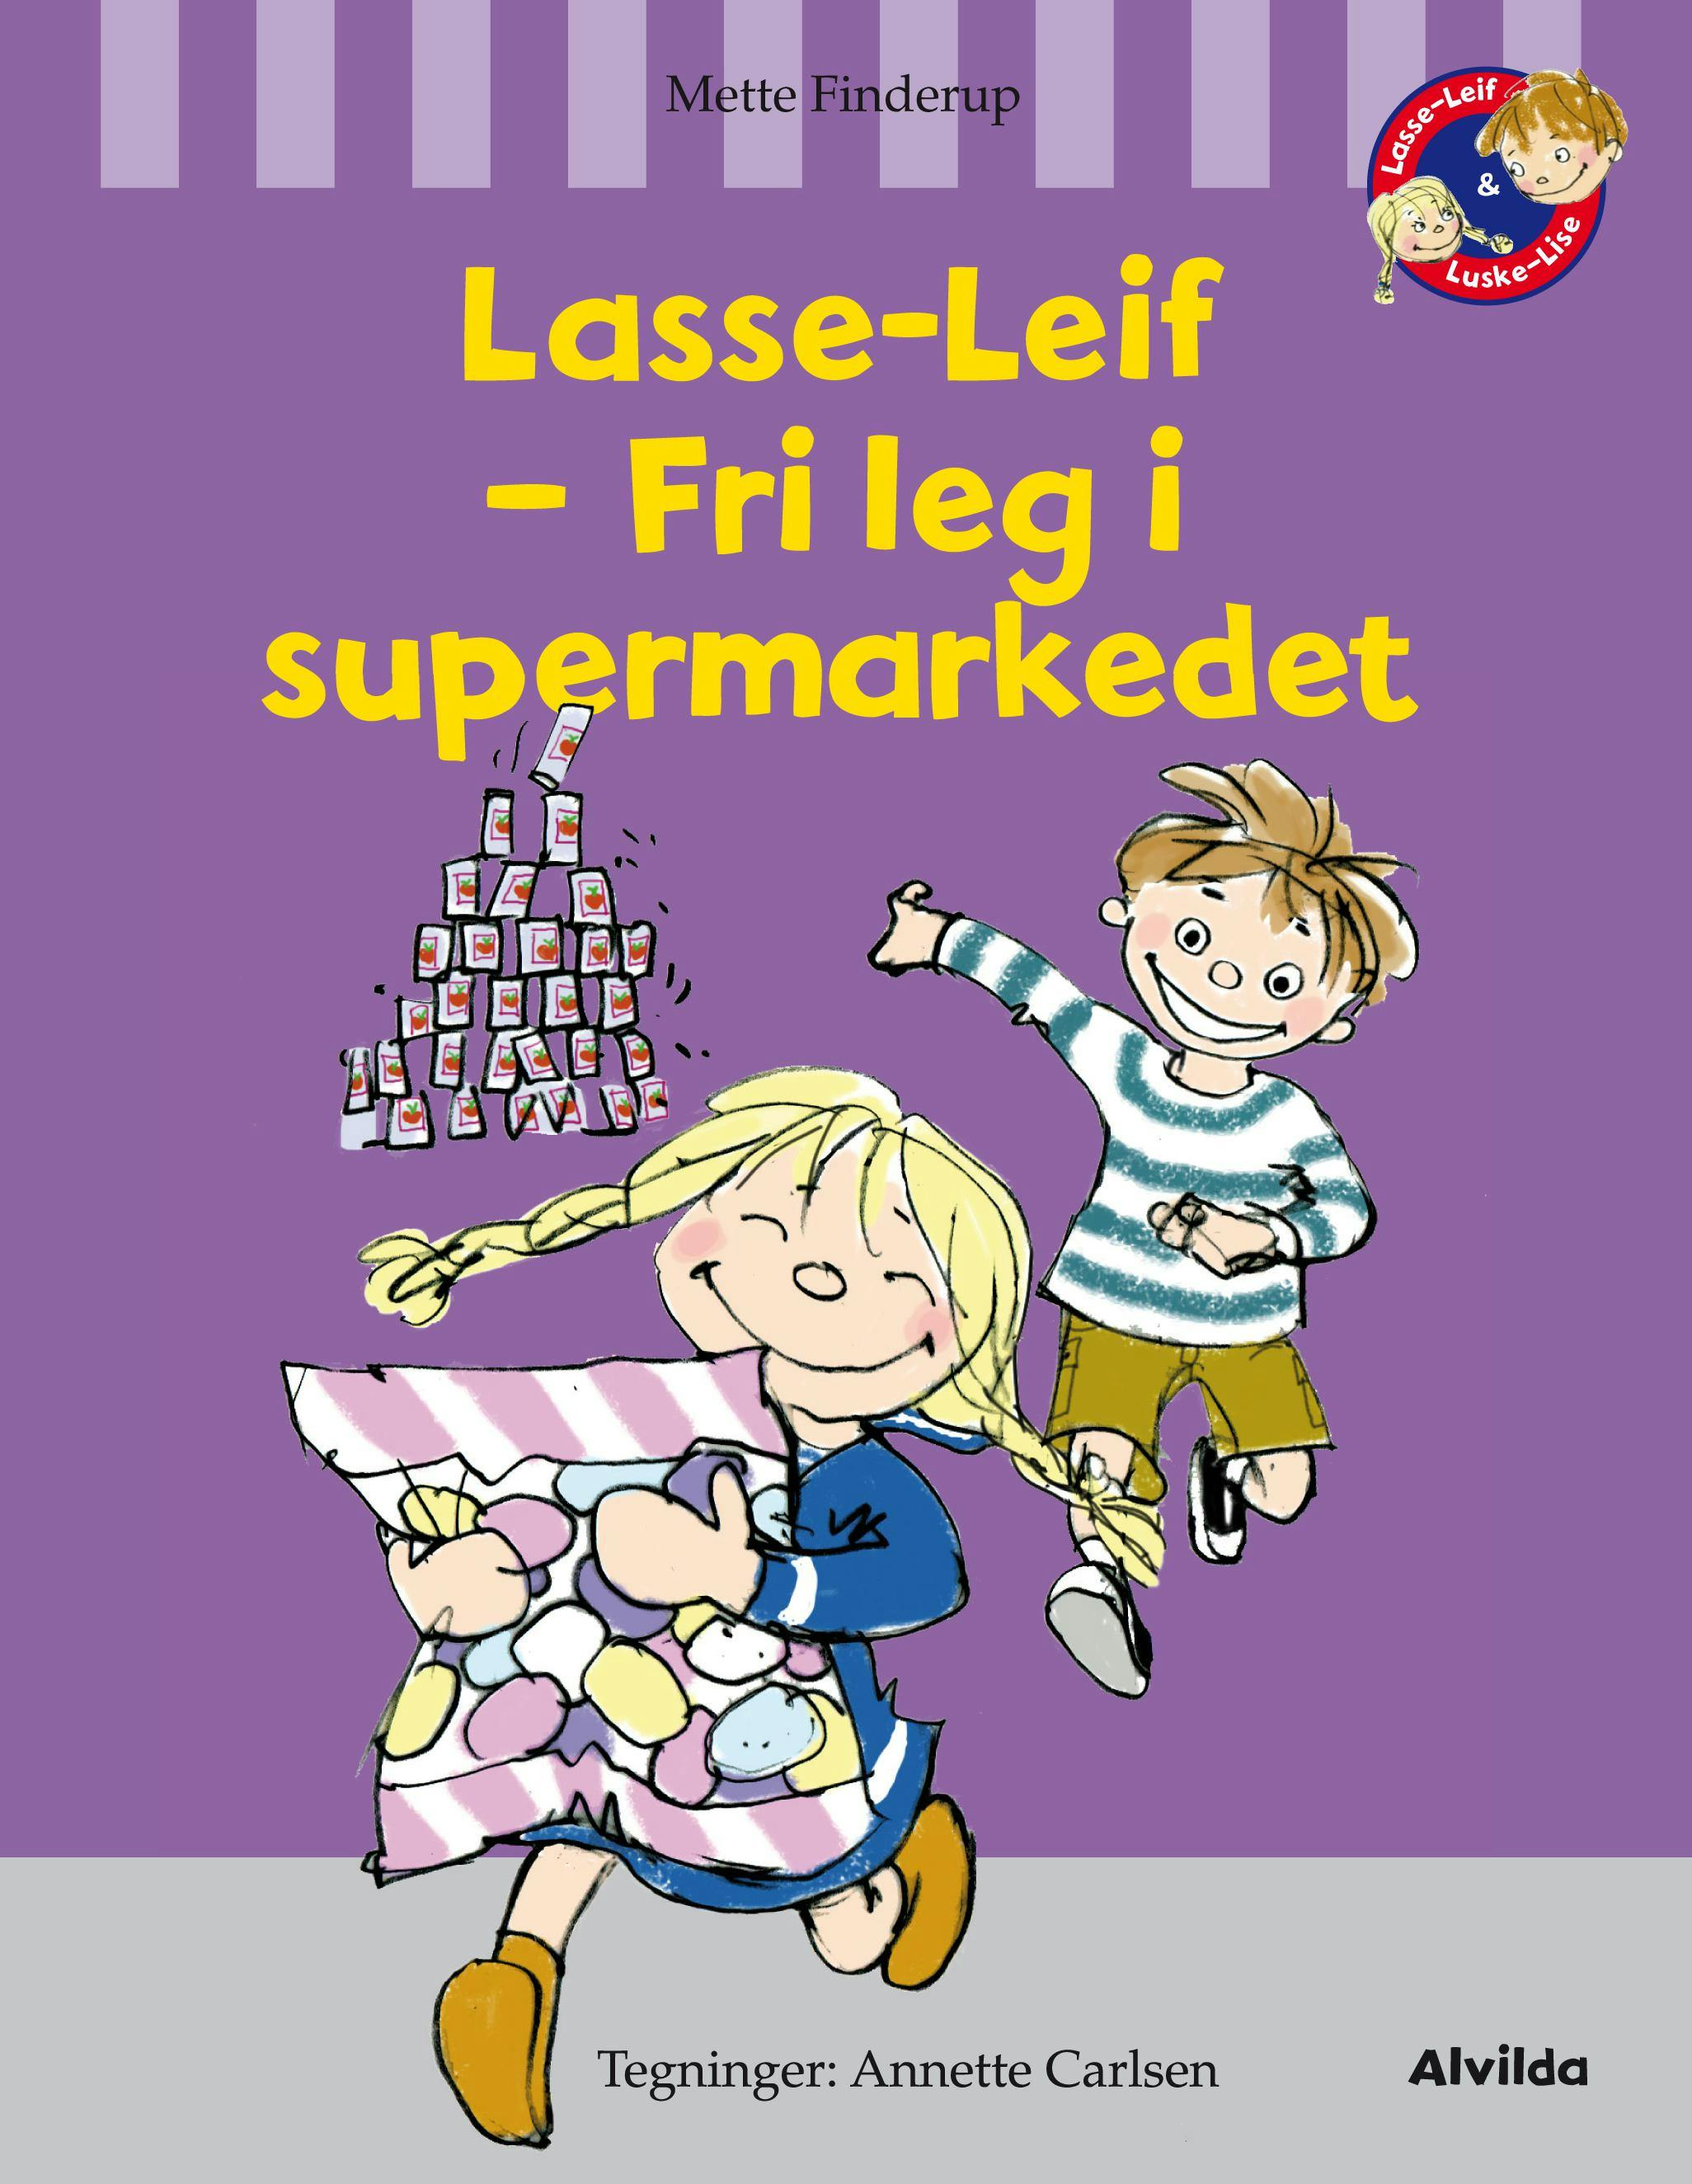 Lasse-Leif - fri leg i supermarkedet - Mette Finderup